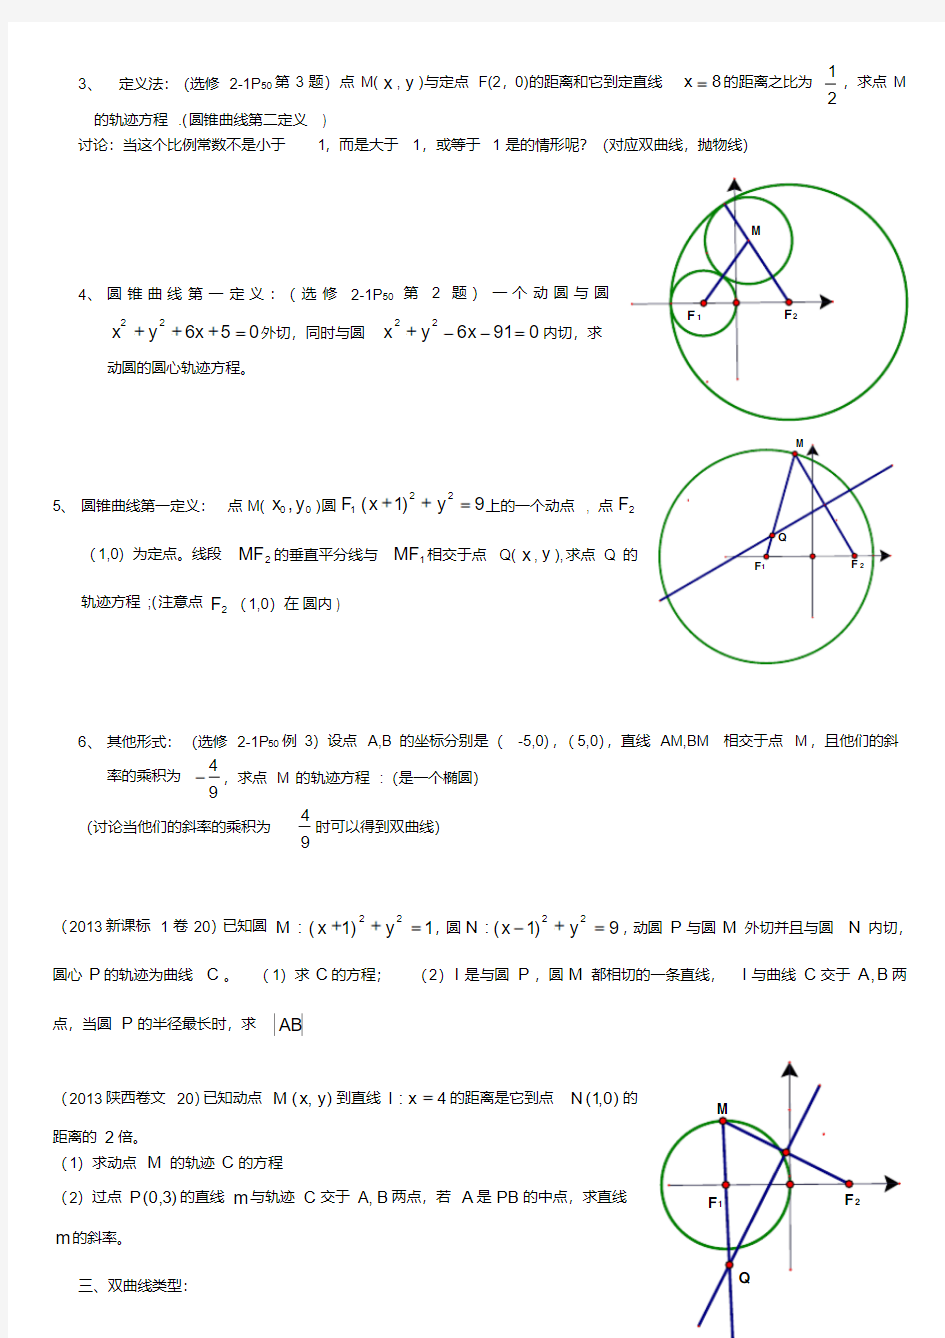 圆锥曲线轨迹方程经典例题